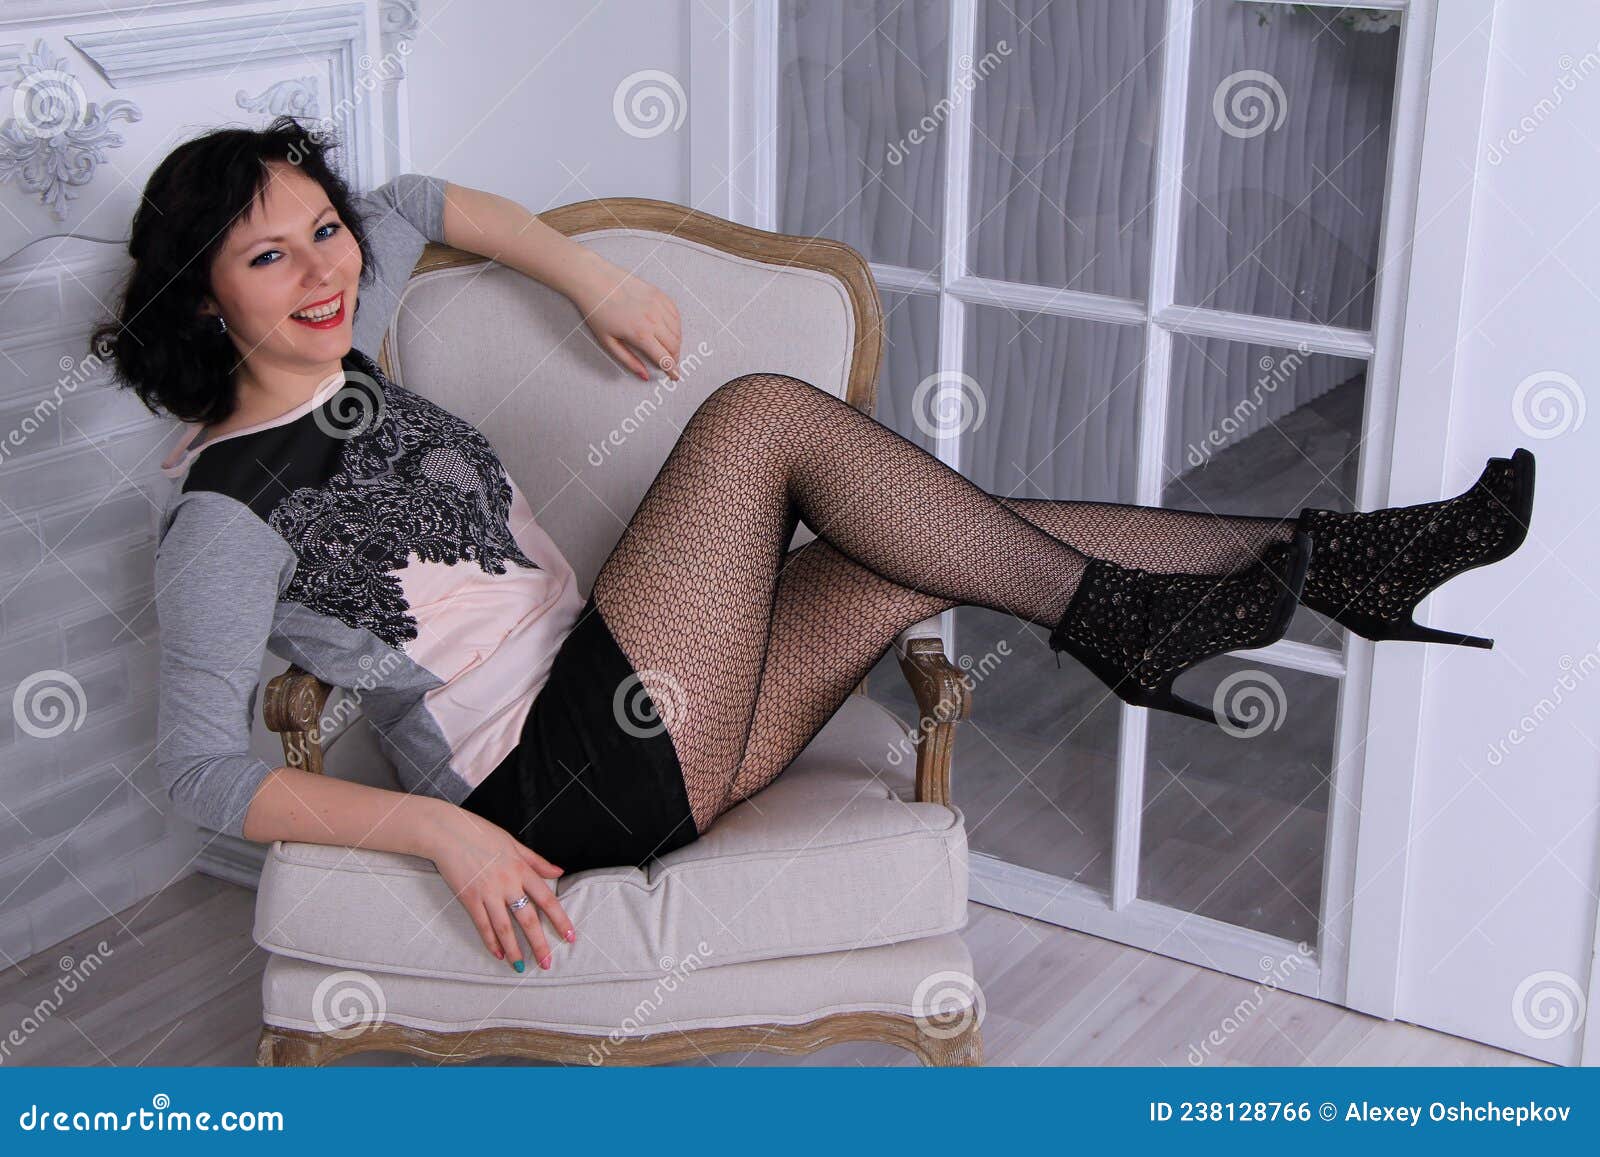 https://thumbs.dreamstime.com/z/beautiful-legged-brunette-girl-black-miniskirt-black-fishnet-stockings-posing-chair-beautiful-legged-brunette-girl-238128766.jpg